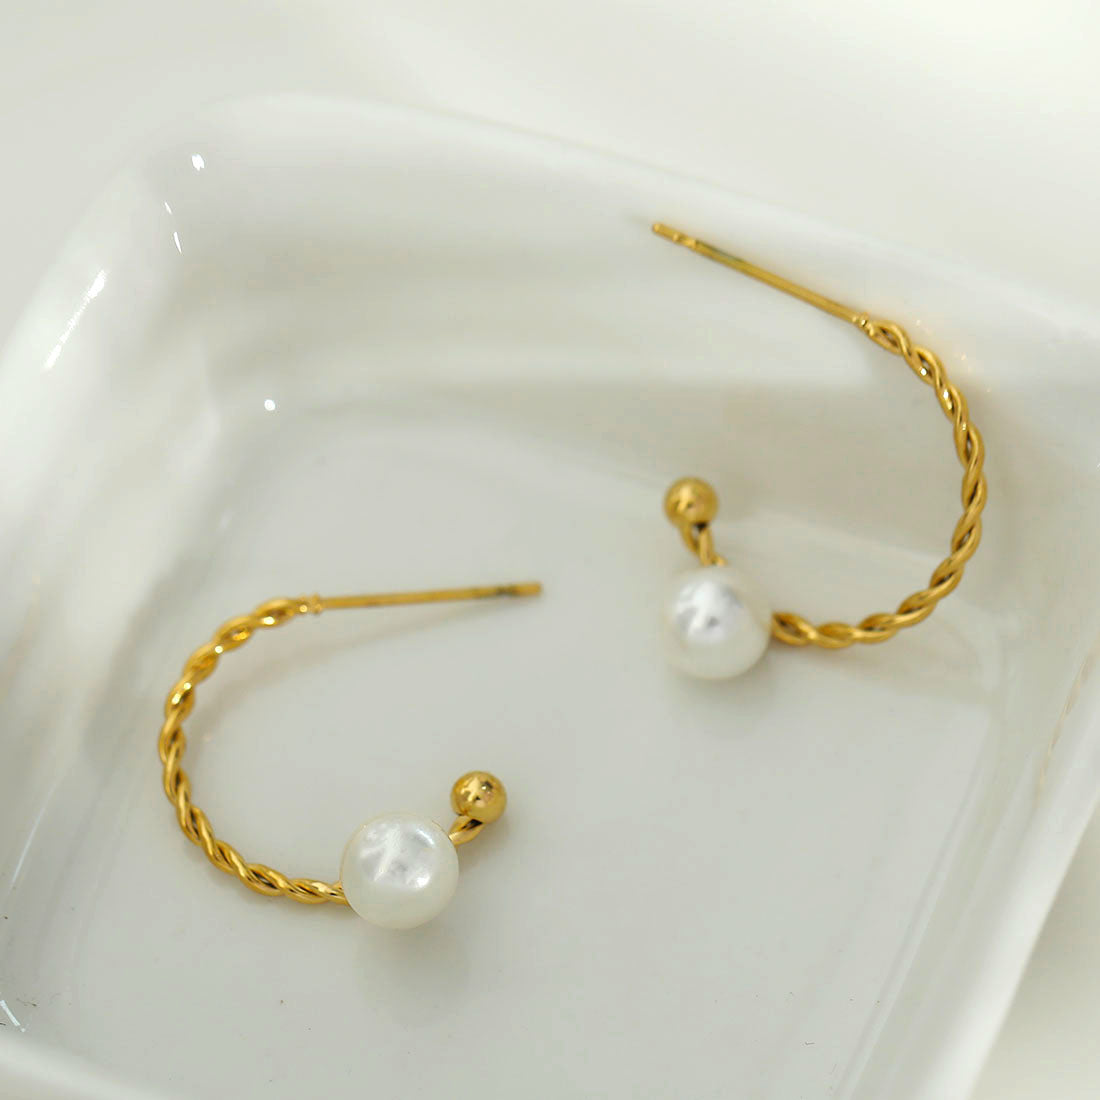 | hackney nine | hackneynine | necklace | hoops | bracelets | earrings | charms | studs_earrings | jewellery | jewellery-store | shop-jewelry | gold-jewellery | dressy_jewellery | classy_ jewellery | on_trend_jewellery | fashion_ jewellery | cool_jewellery | affordable_jewellery | designer_jewellery | vintage_jewellery | heart_jewellery | gifts-for-her | gifts-for-mum | gifts-for-girls | gifts-for-females | natural-pearl-jewellery | JOY21262-earrings